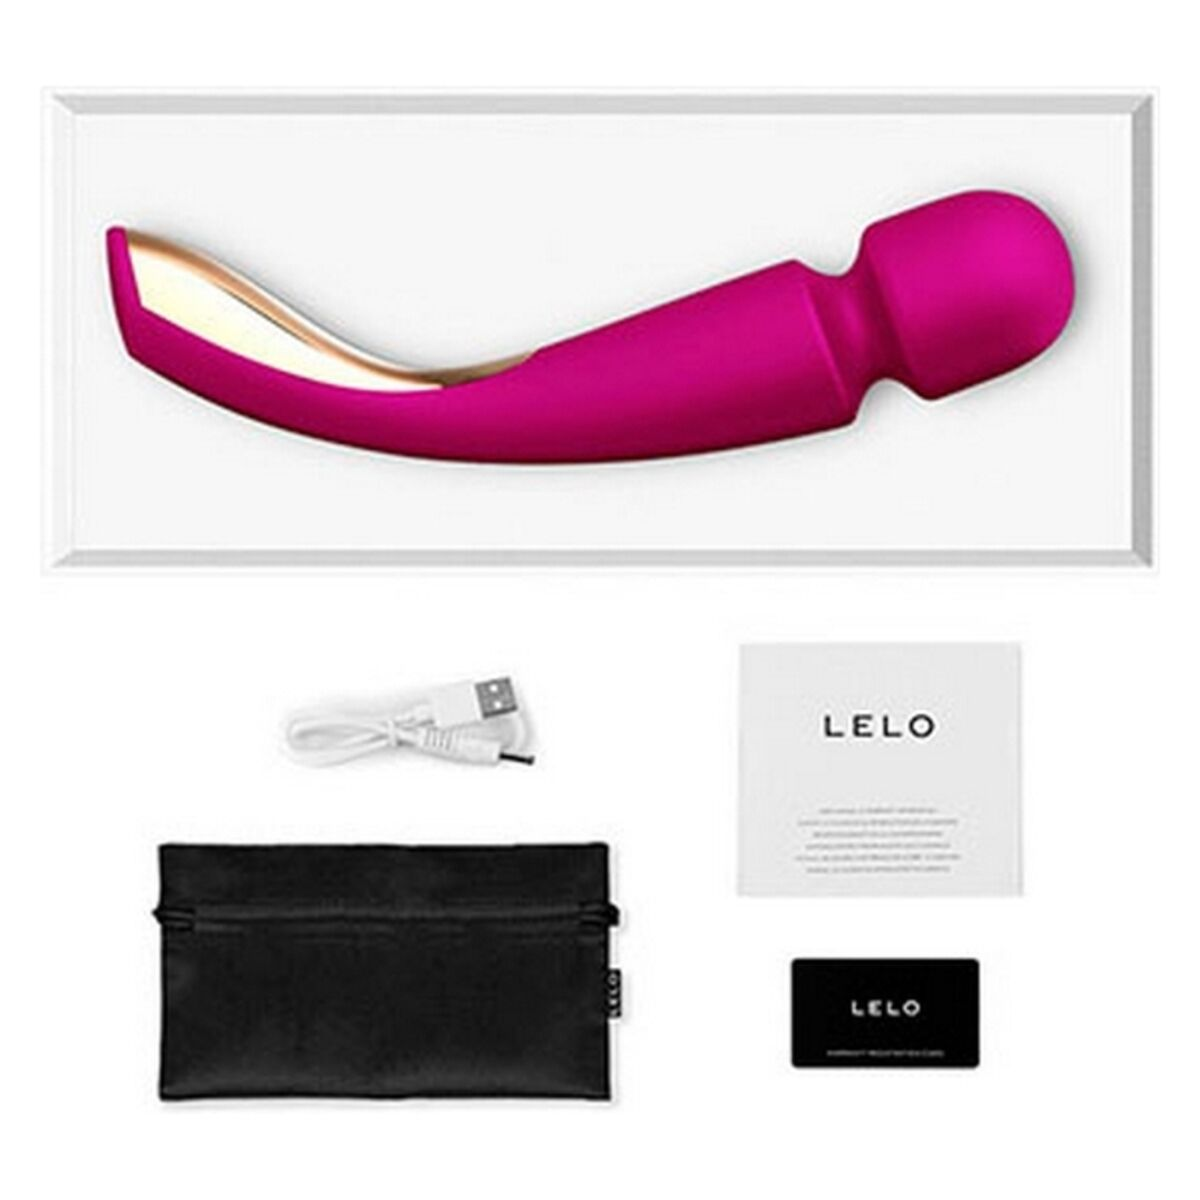 LELO LELO Smart Wand - Groß - wand-massager Pink 2